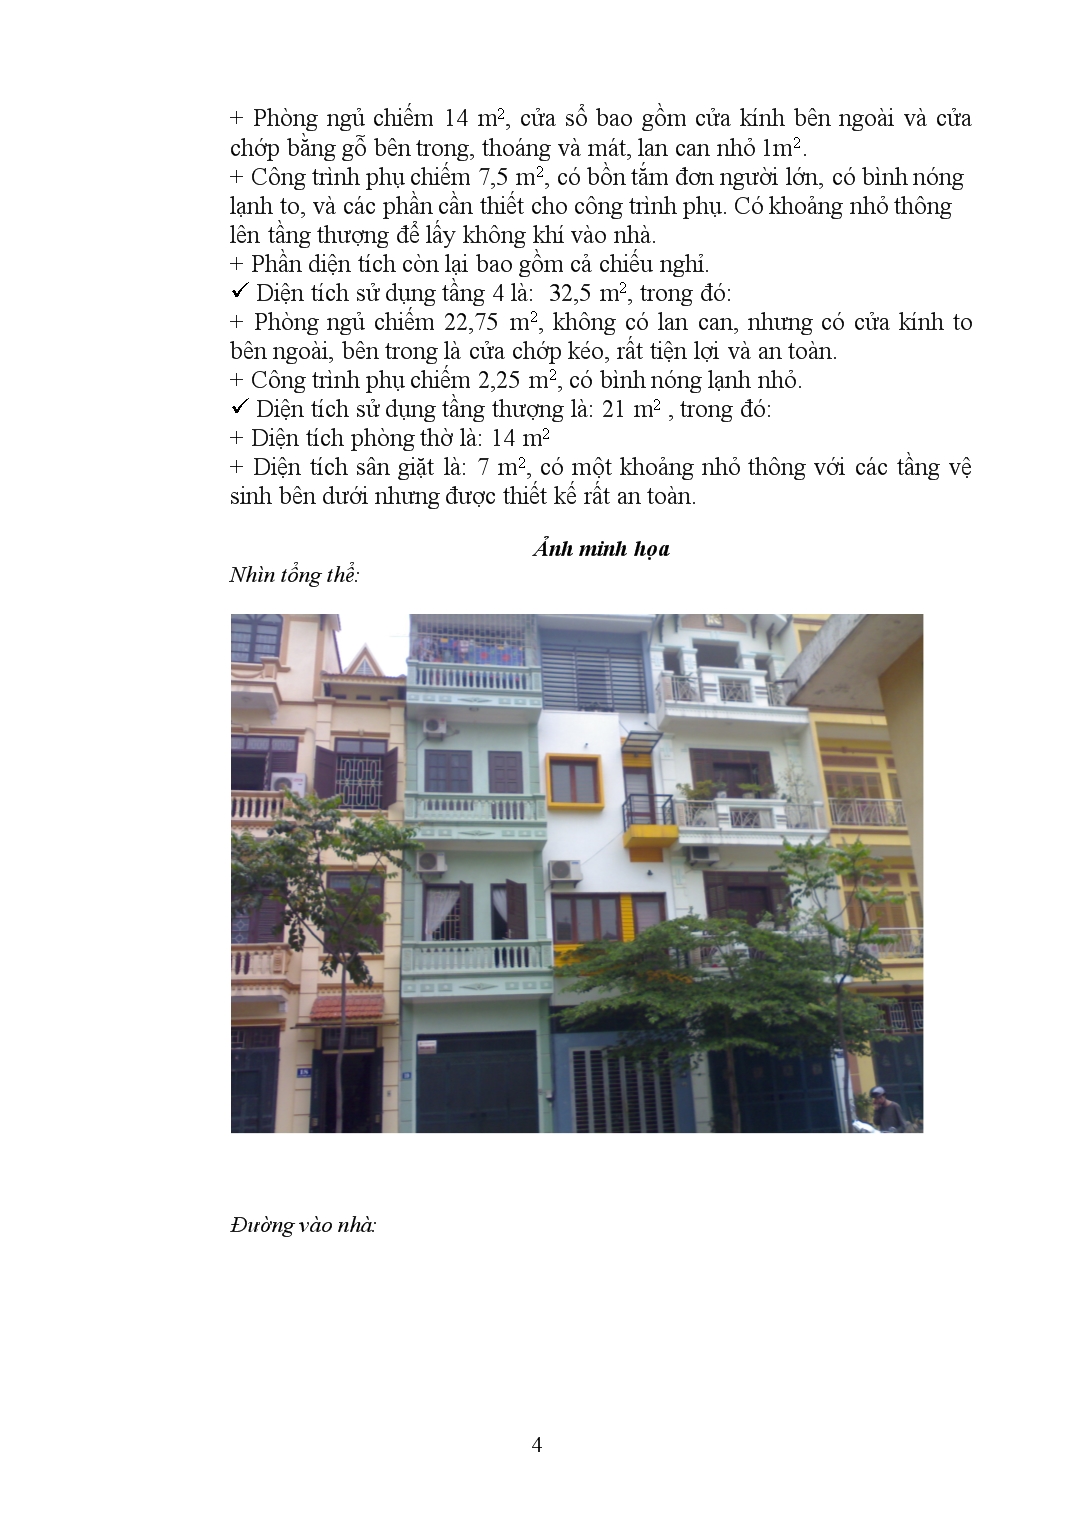 Quy trình định giá một căn nhà để bán trang 4